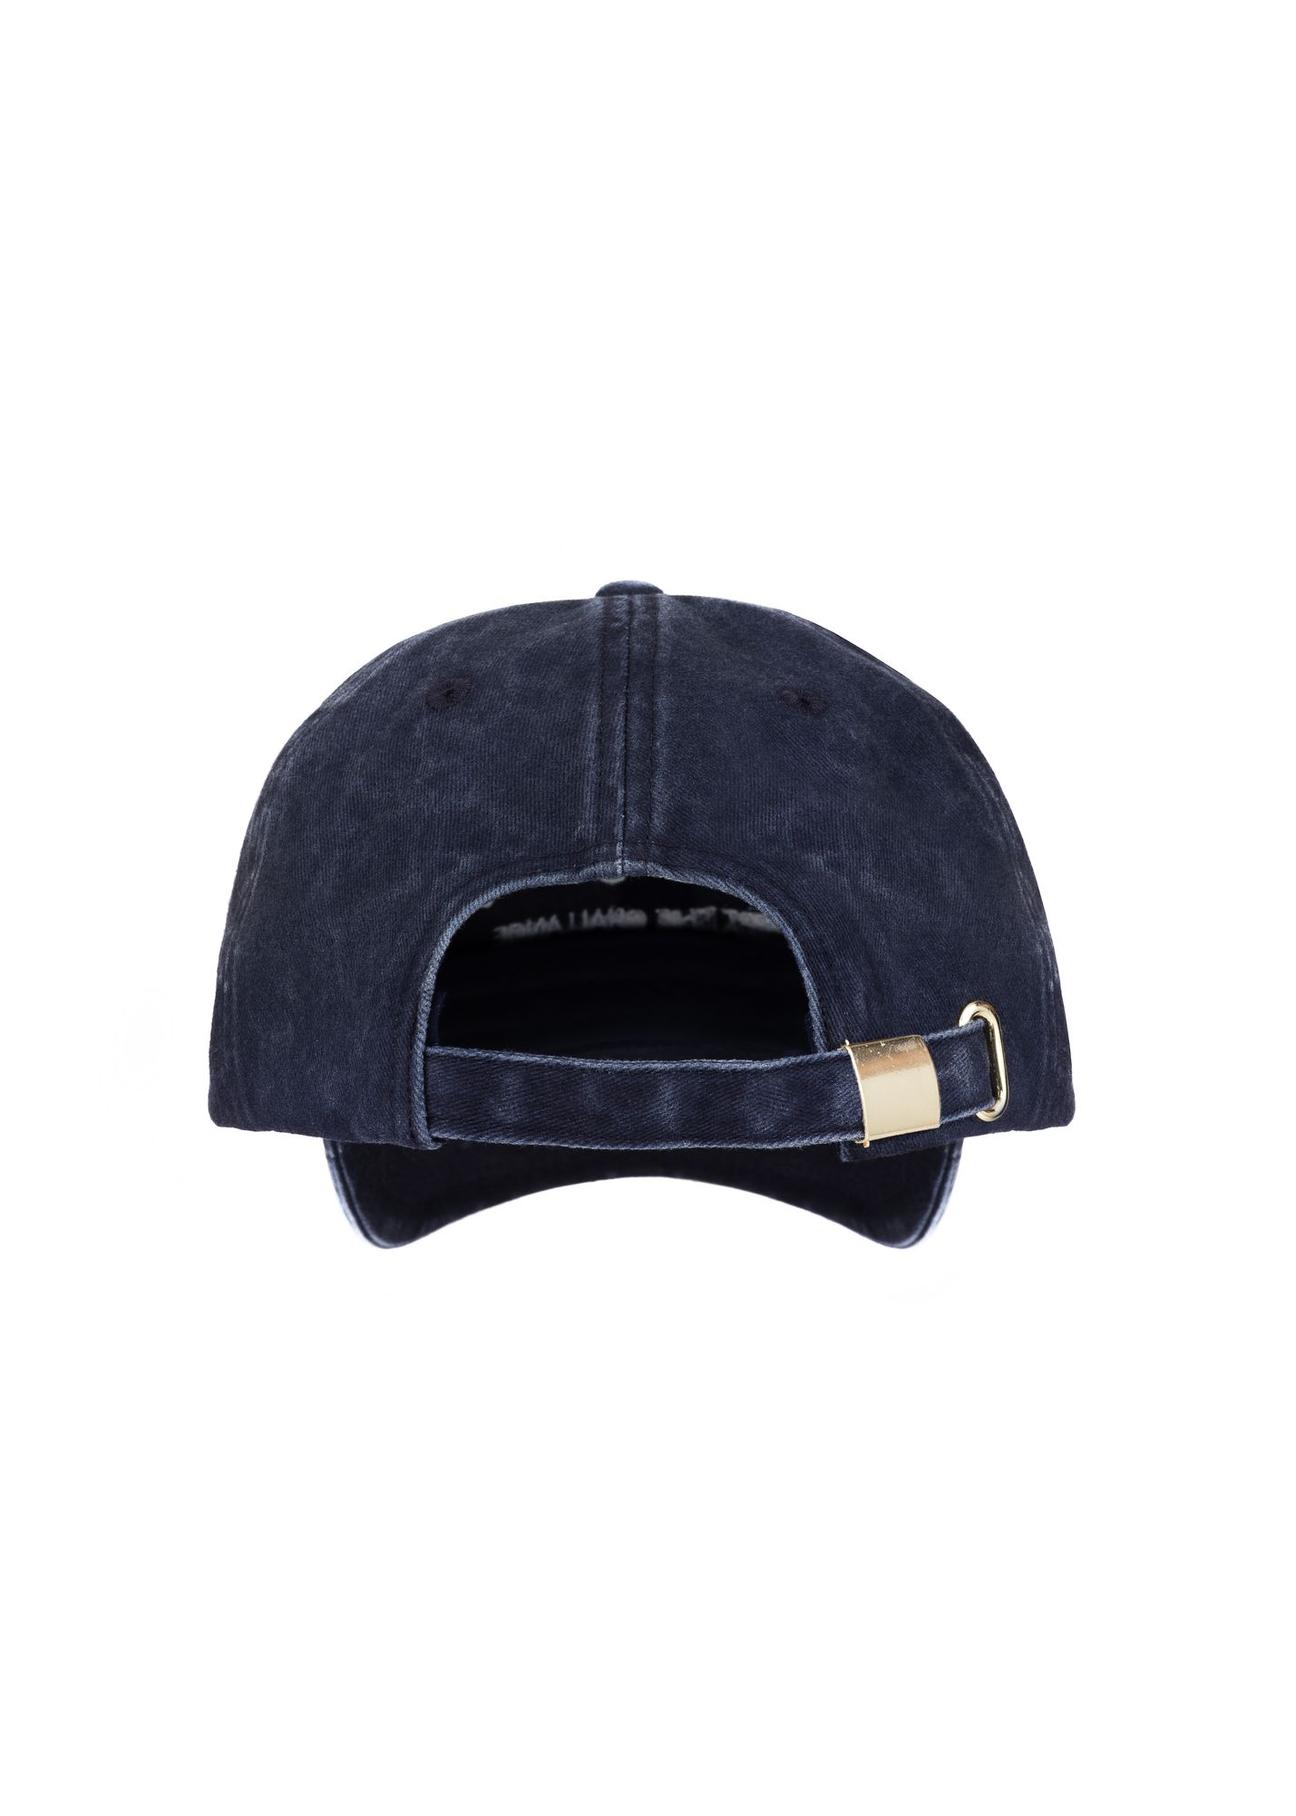 Granatowa czapka z daszkiem z haftem CZALT-0006-17(W23)